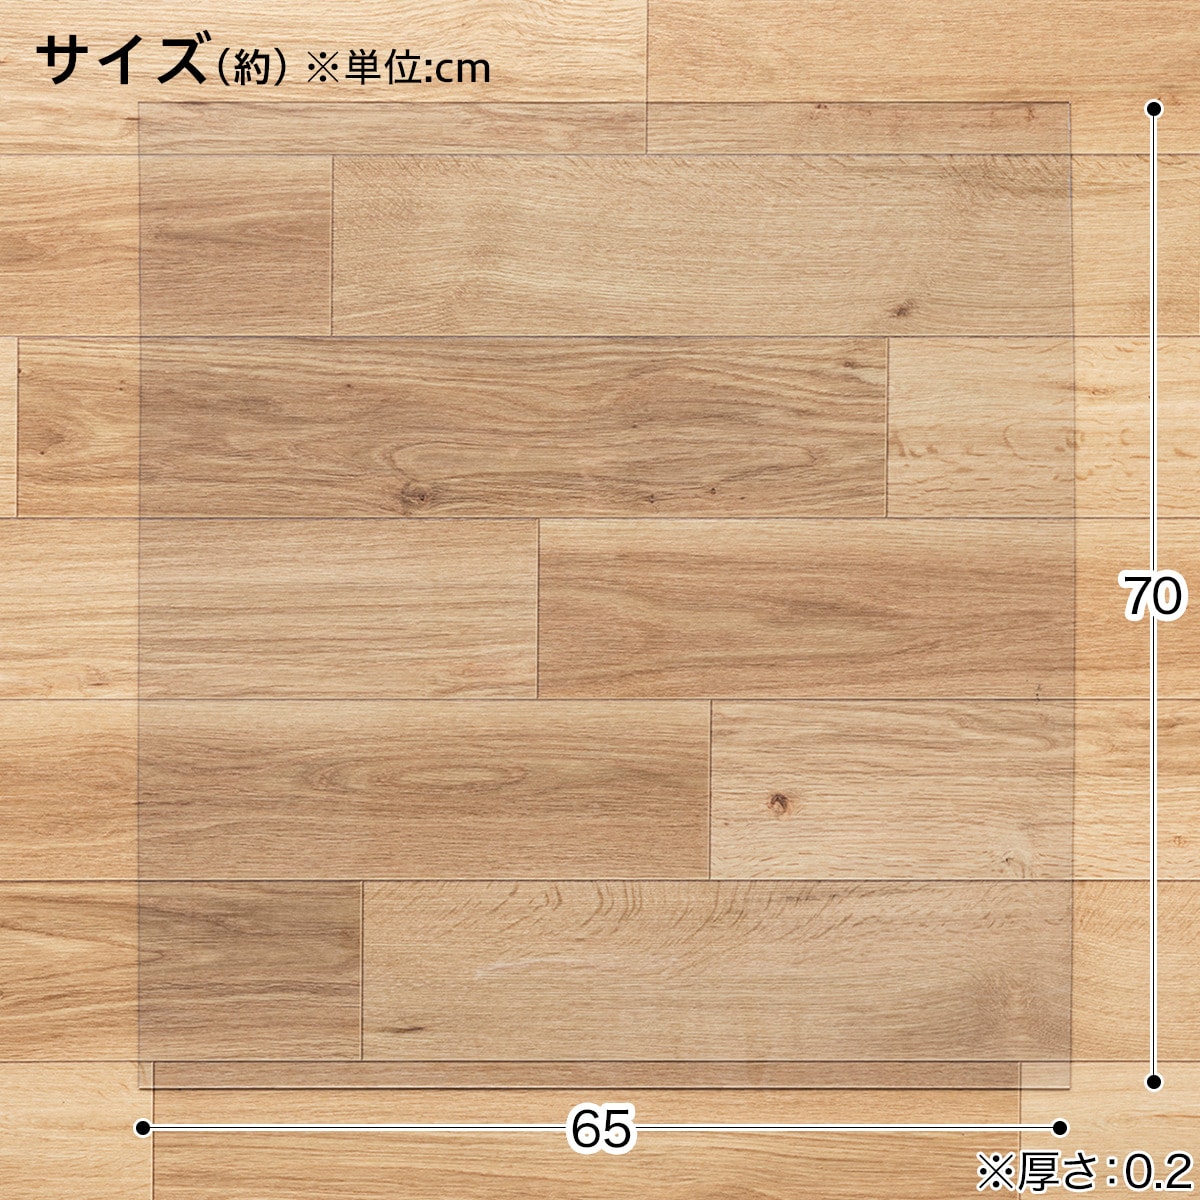 冷蔵庫マット(大 65cm×70cm)通販 ニトリネット【公式】 家具・インテリア通販